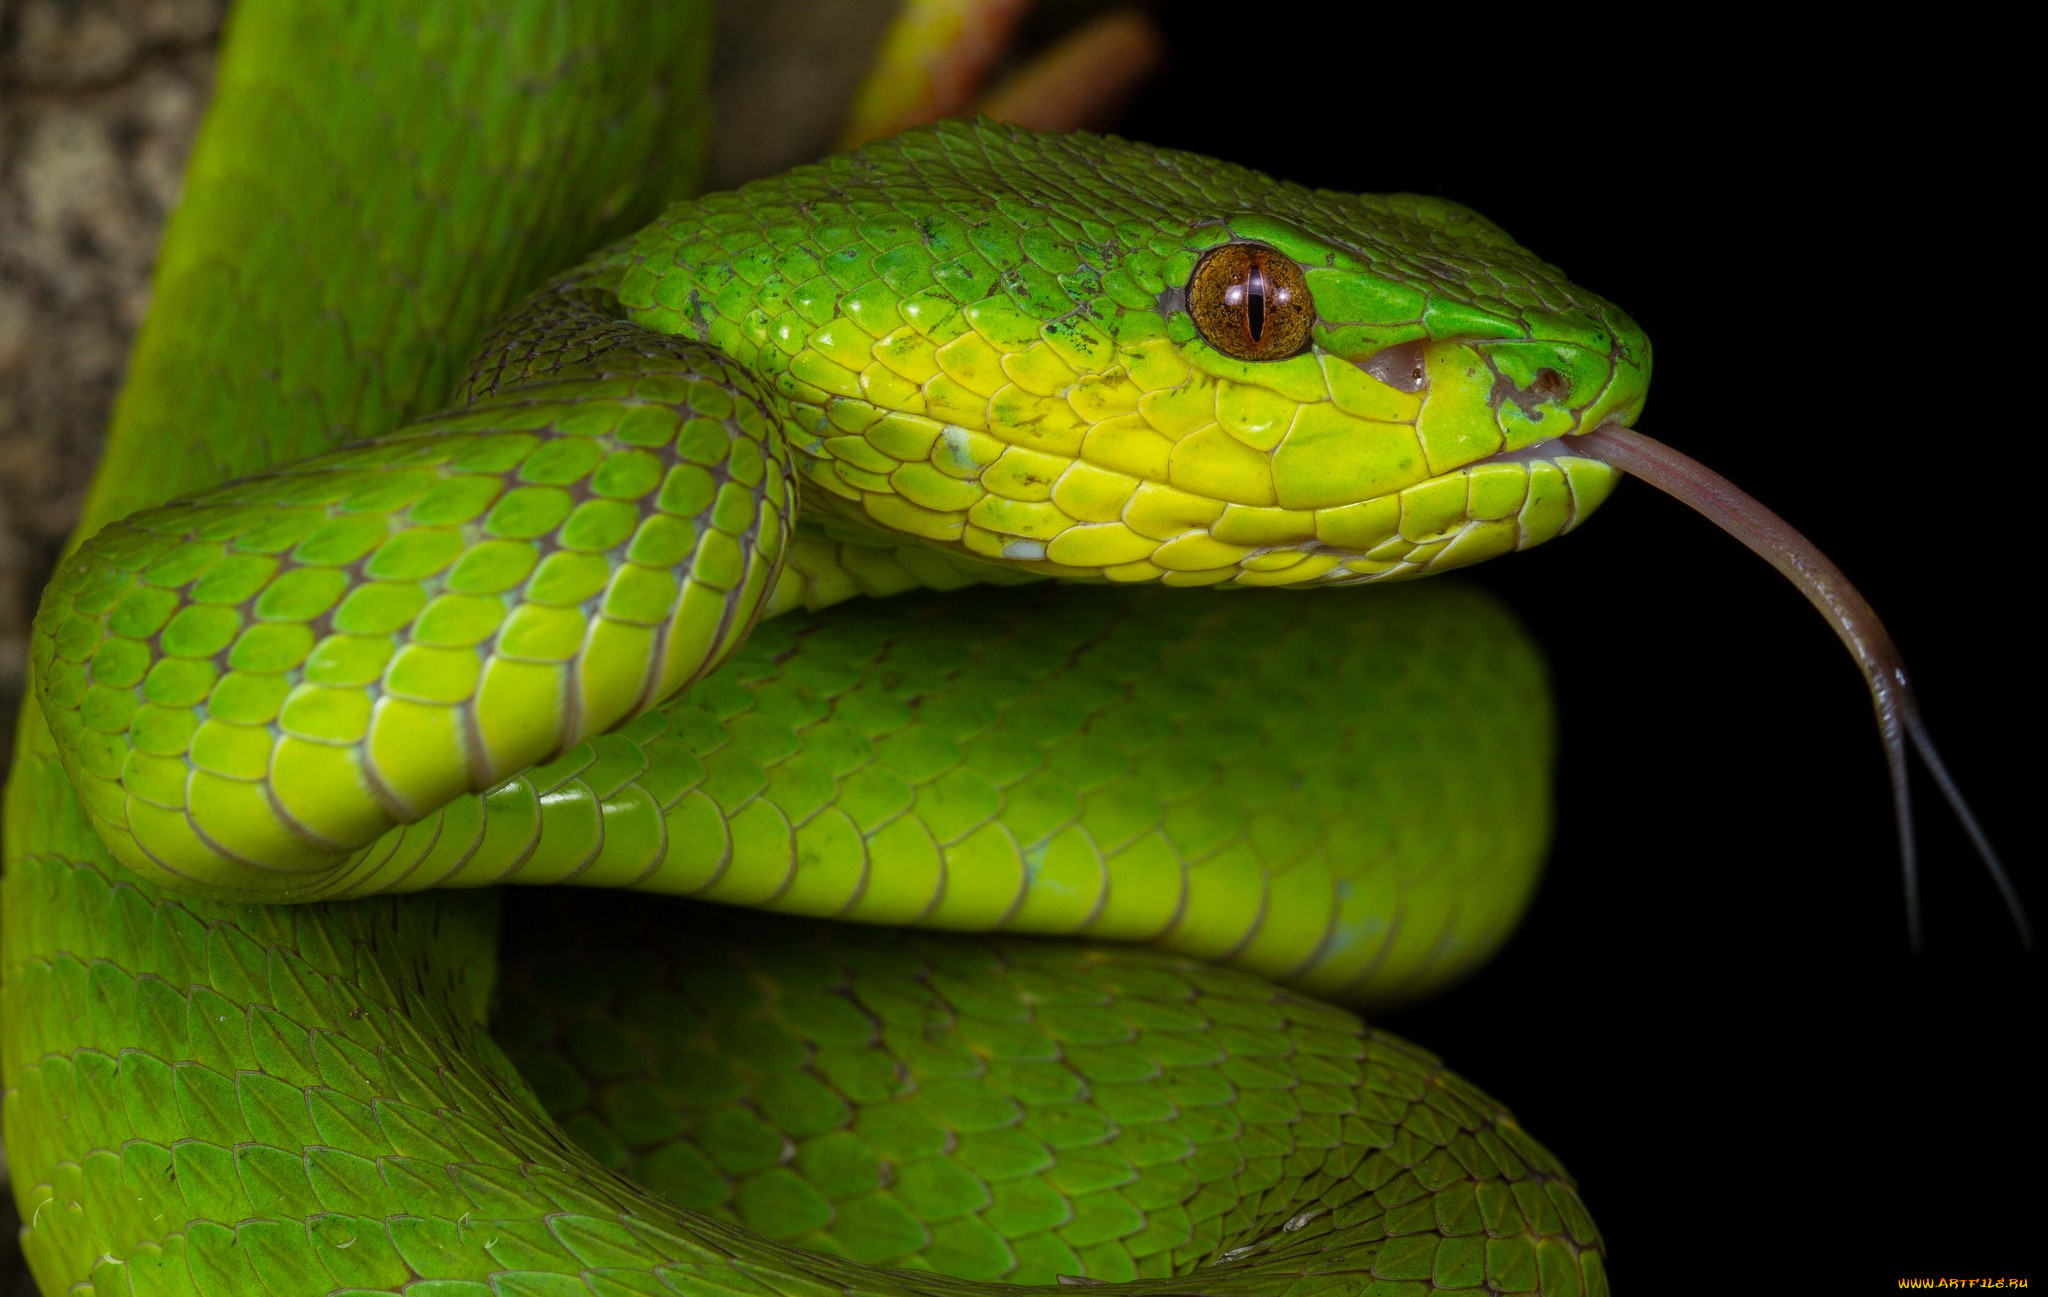 Слушать про змей. Куфия инсулярис. Trimeresurus insularis. Зеленая змея. Желто зеленая змея.